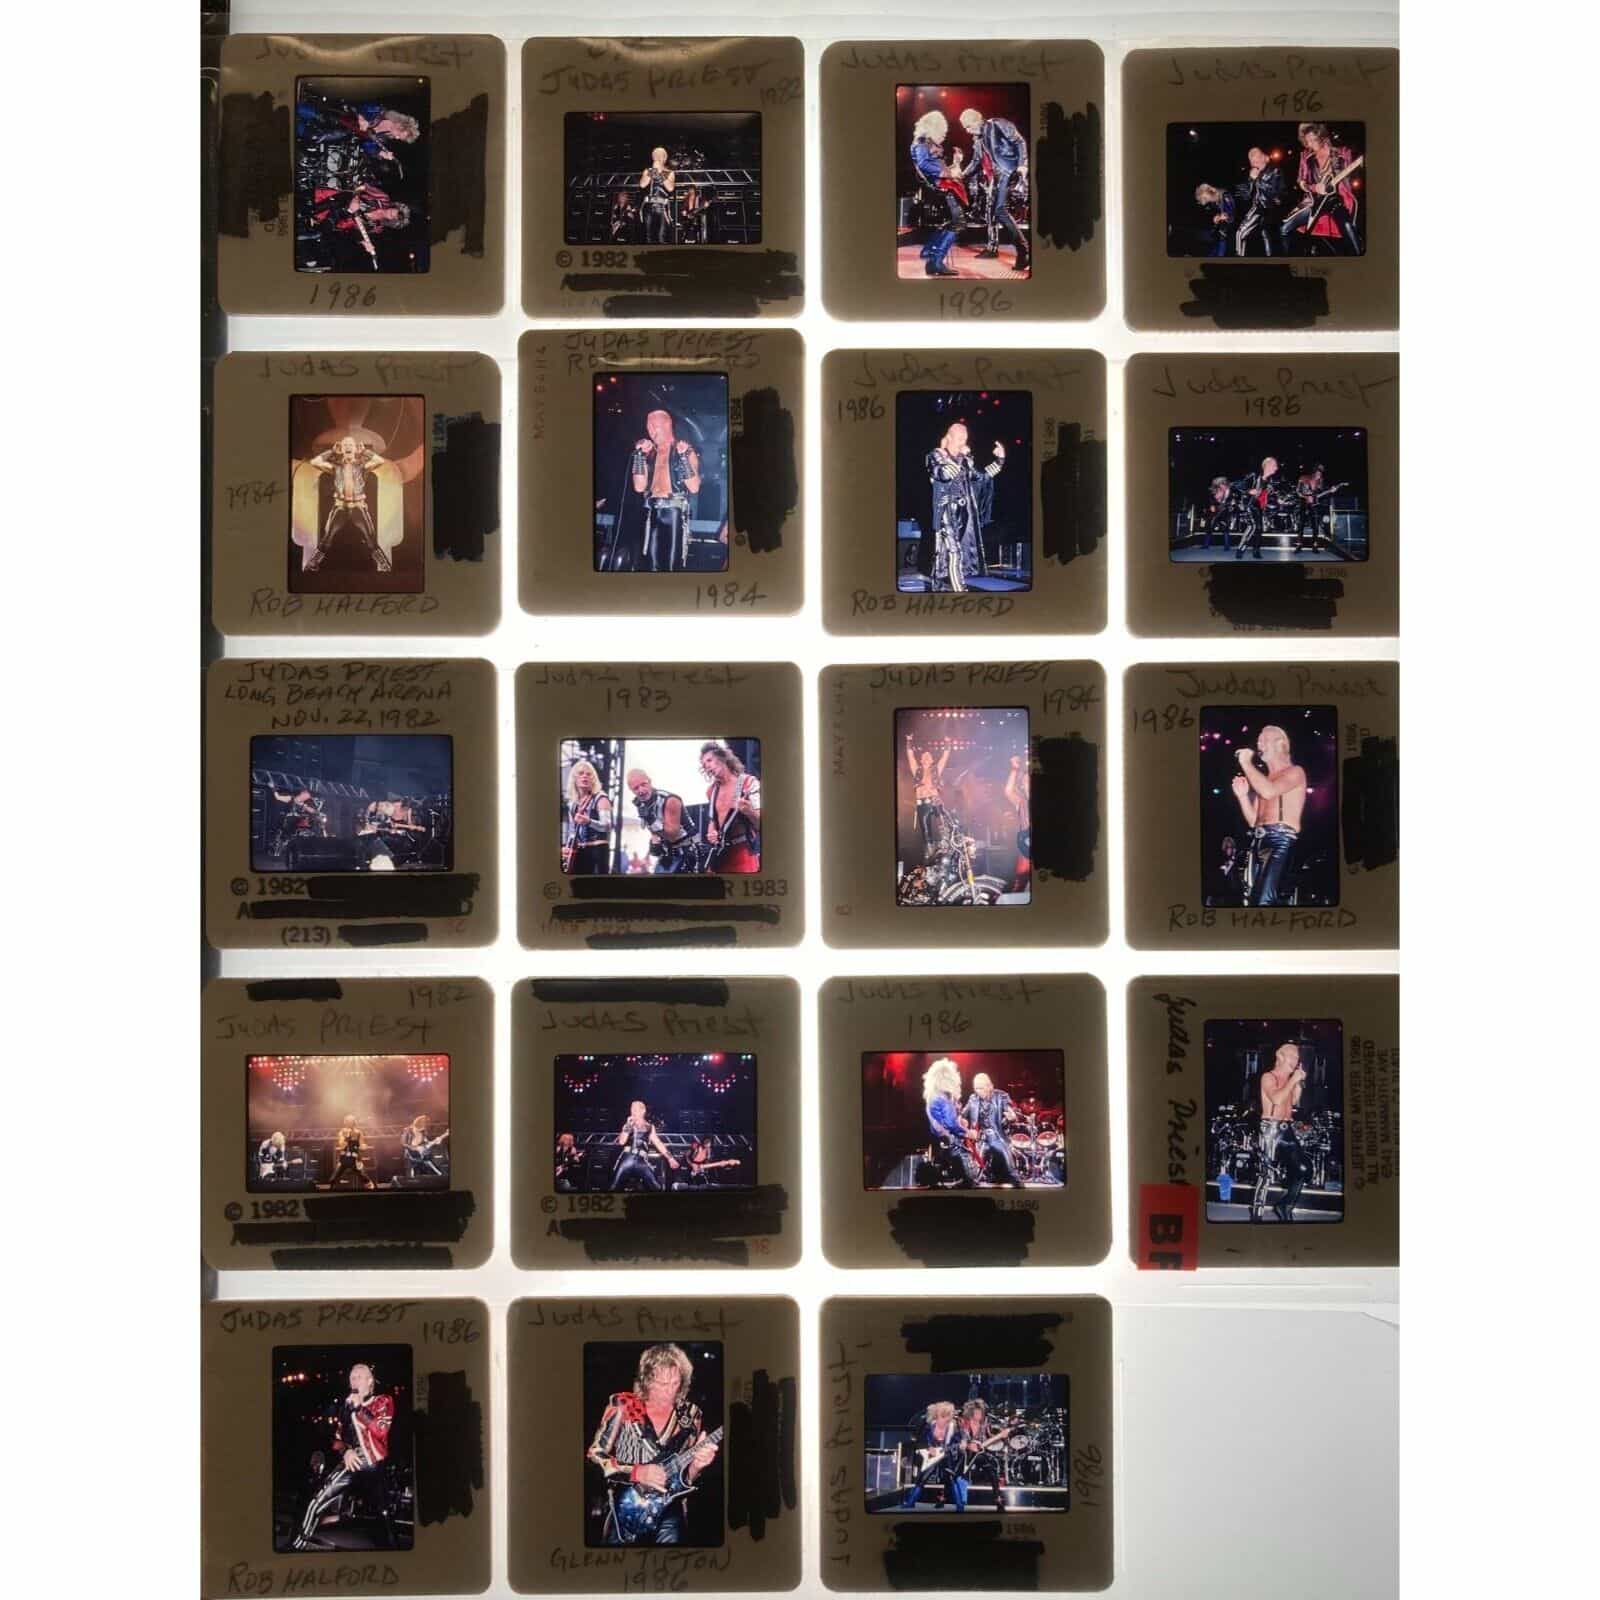 Judas Priest Heavy Metal Rock Gods Original 35mm Slides Lot of 19 Kodachrome